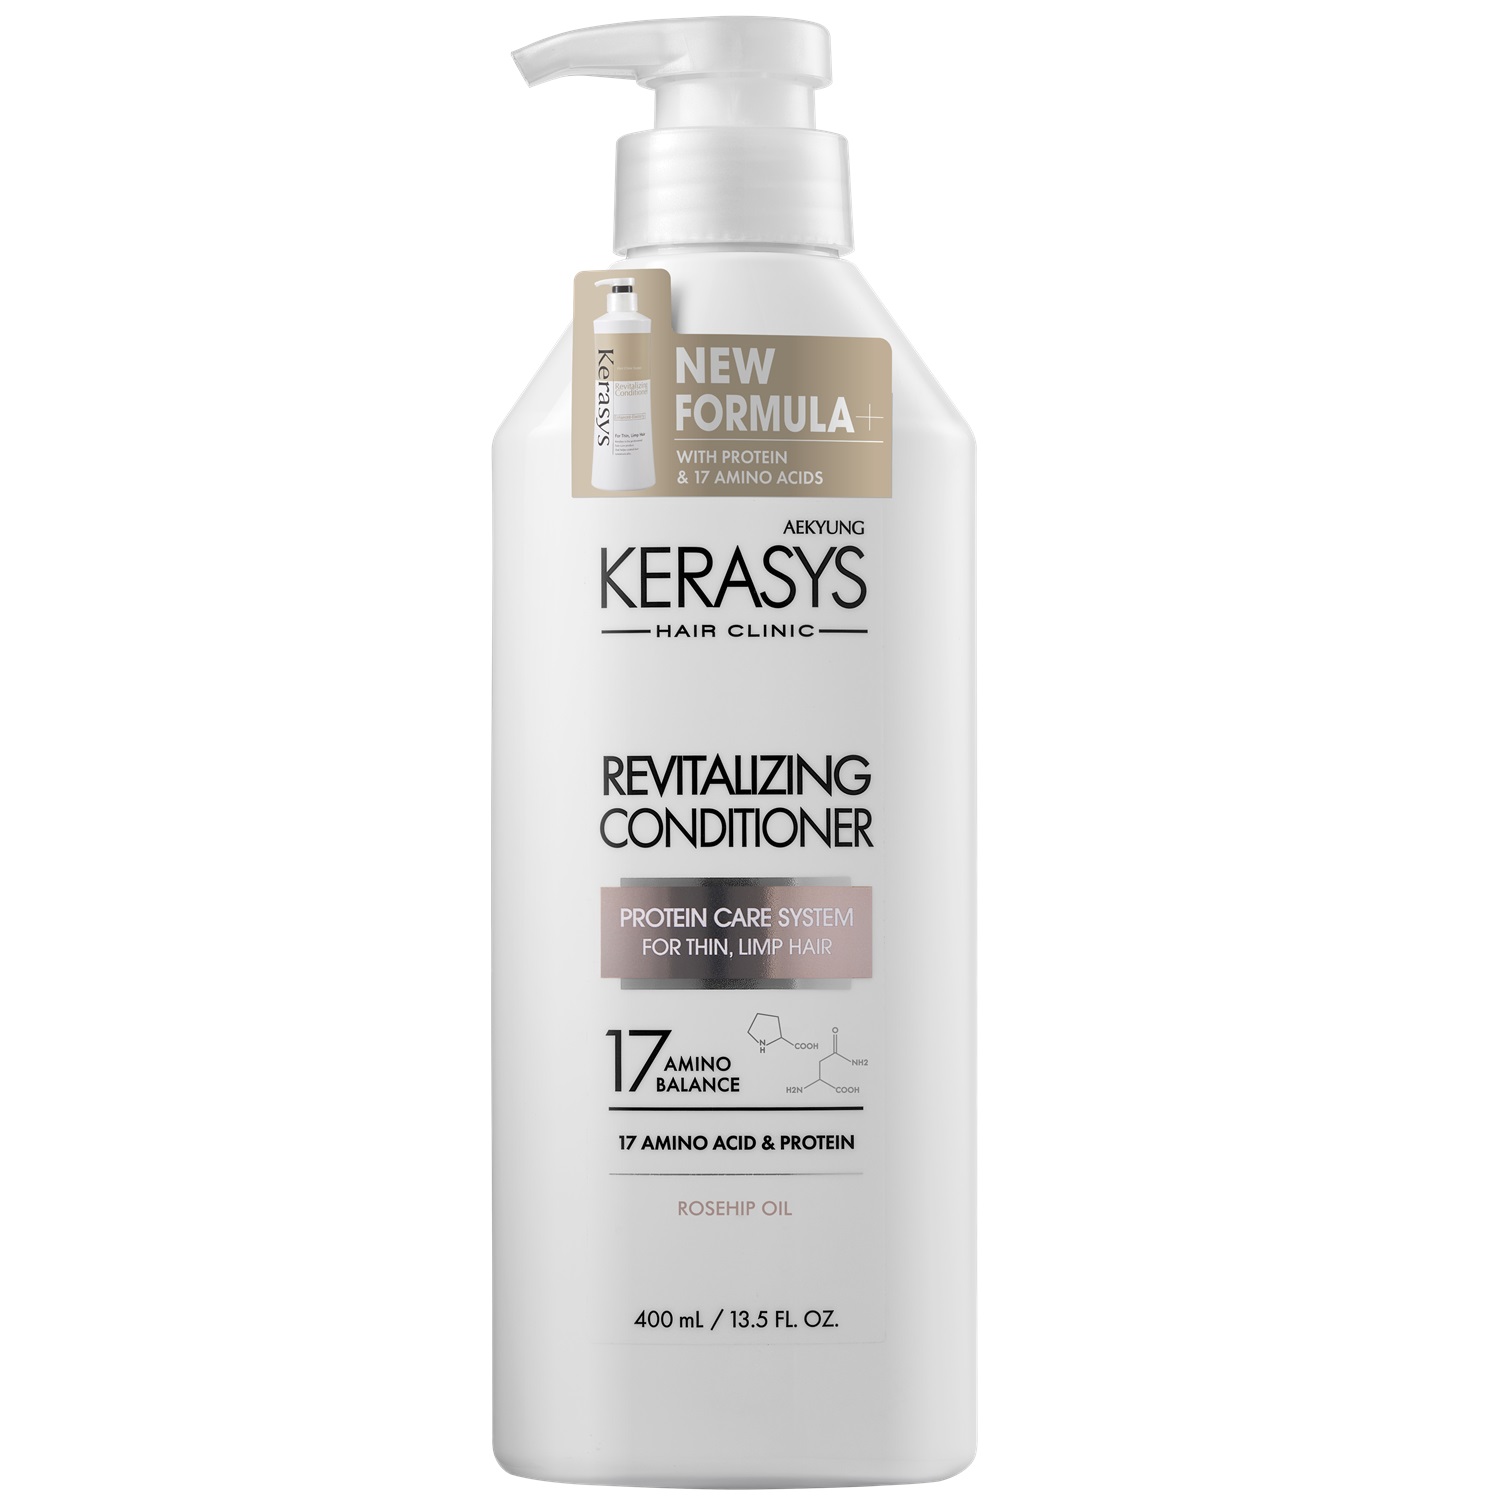 Kerasys Кондиционер оздоравливающий для волос Revitalizing, 400 мл (Kerasys, Hair Clinic)